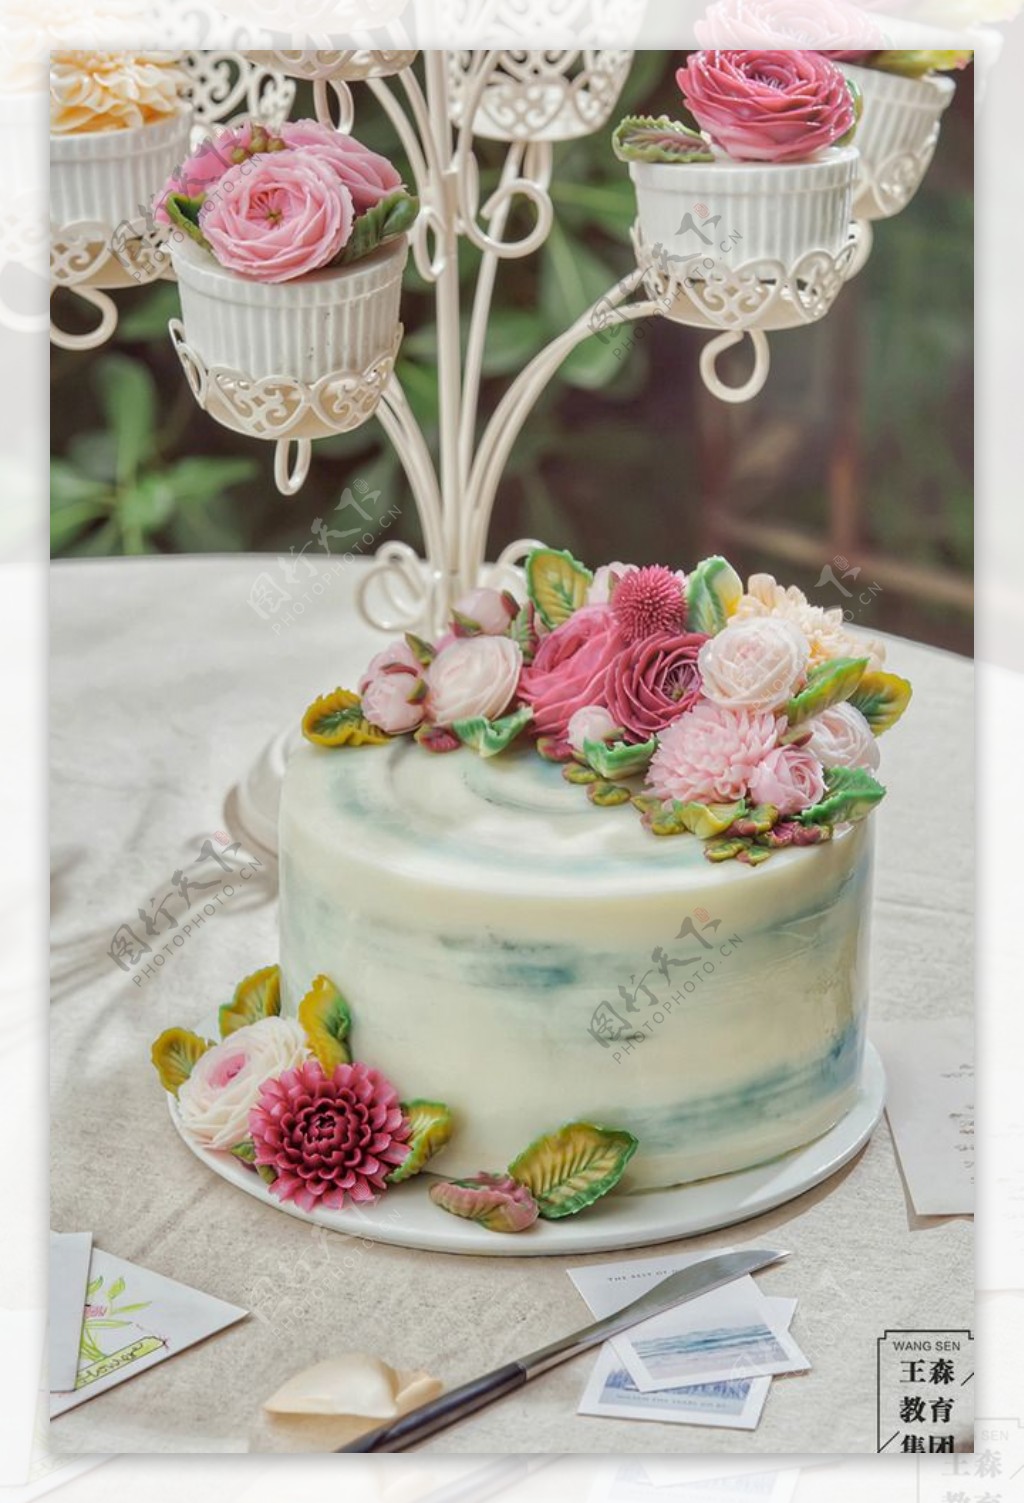 蛋糕奶油裱花的做法_【图解】蛋糕奶油裱花怎么做如何做好吃_蛋糕奶油裱花家常做法大全_莱婉娜_豆果美食